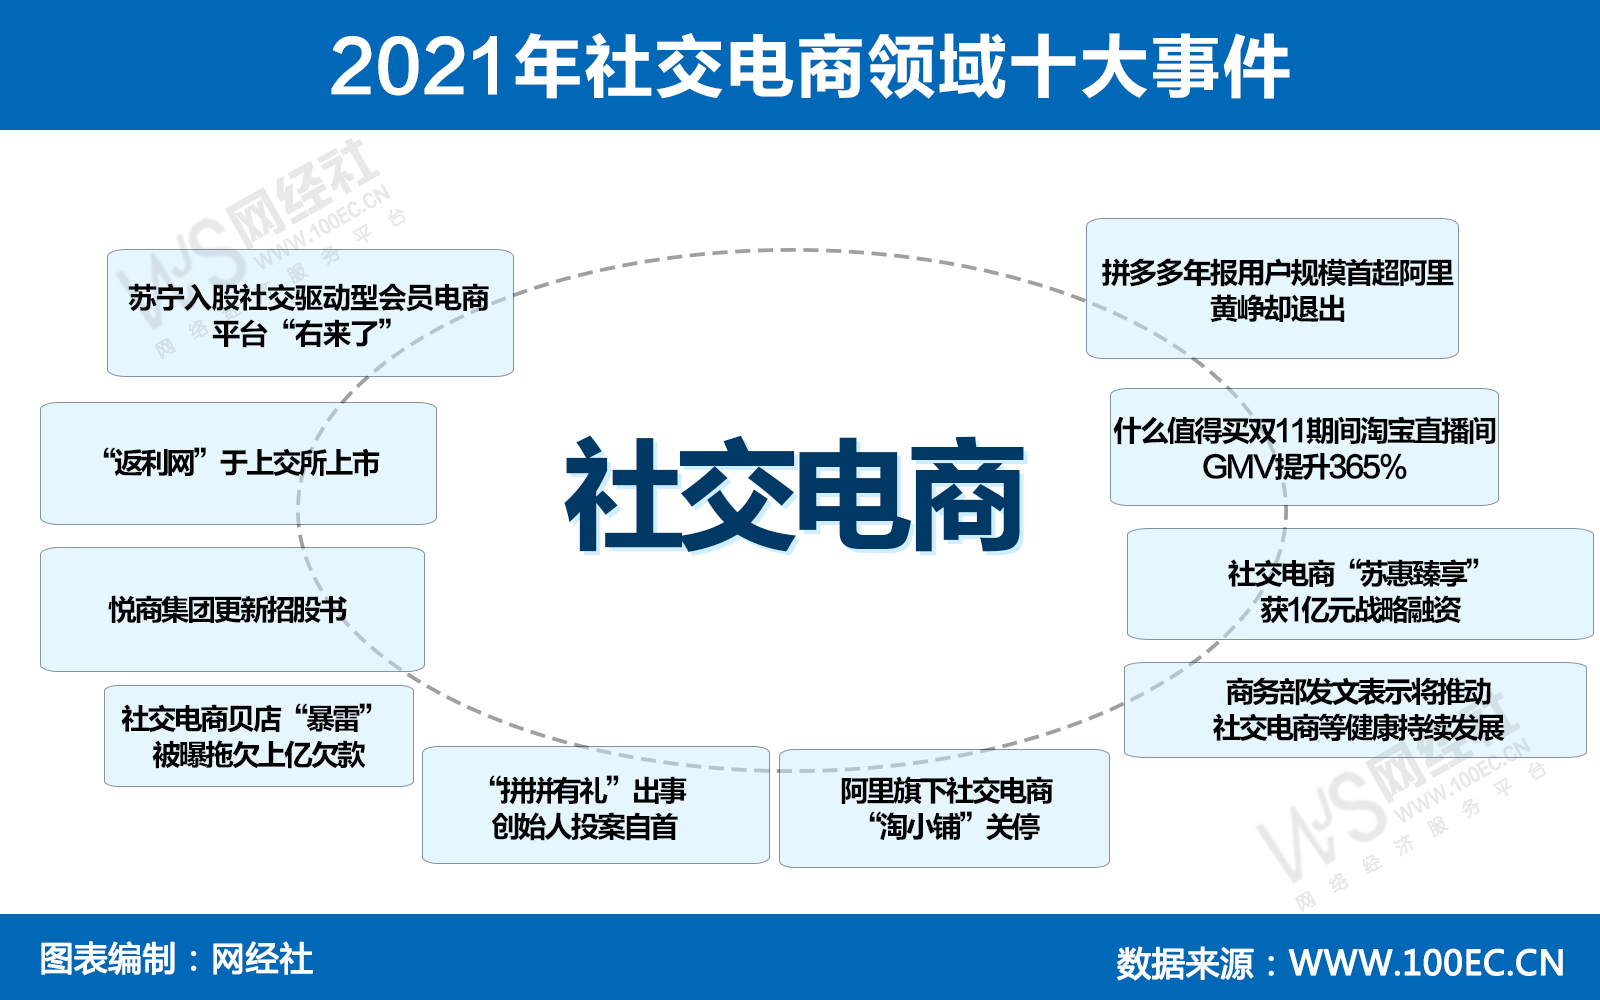 2021年社交电商领域十大事件(1).jpg